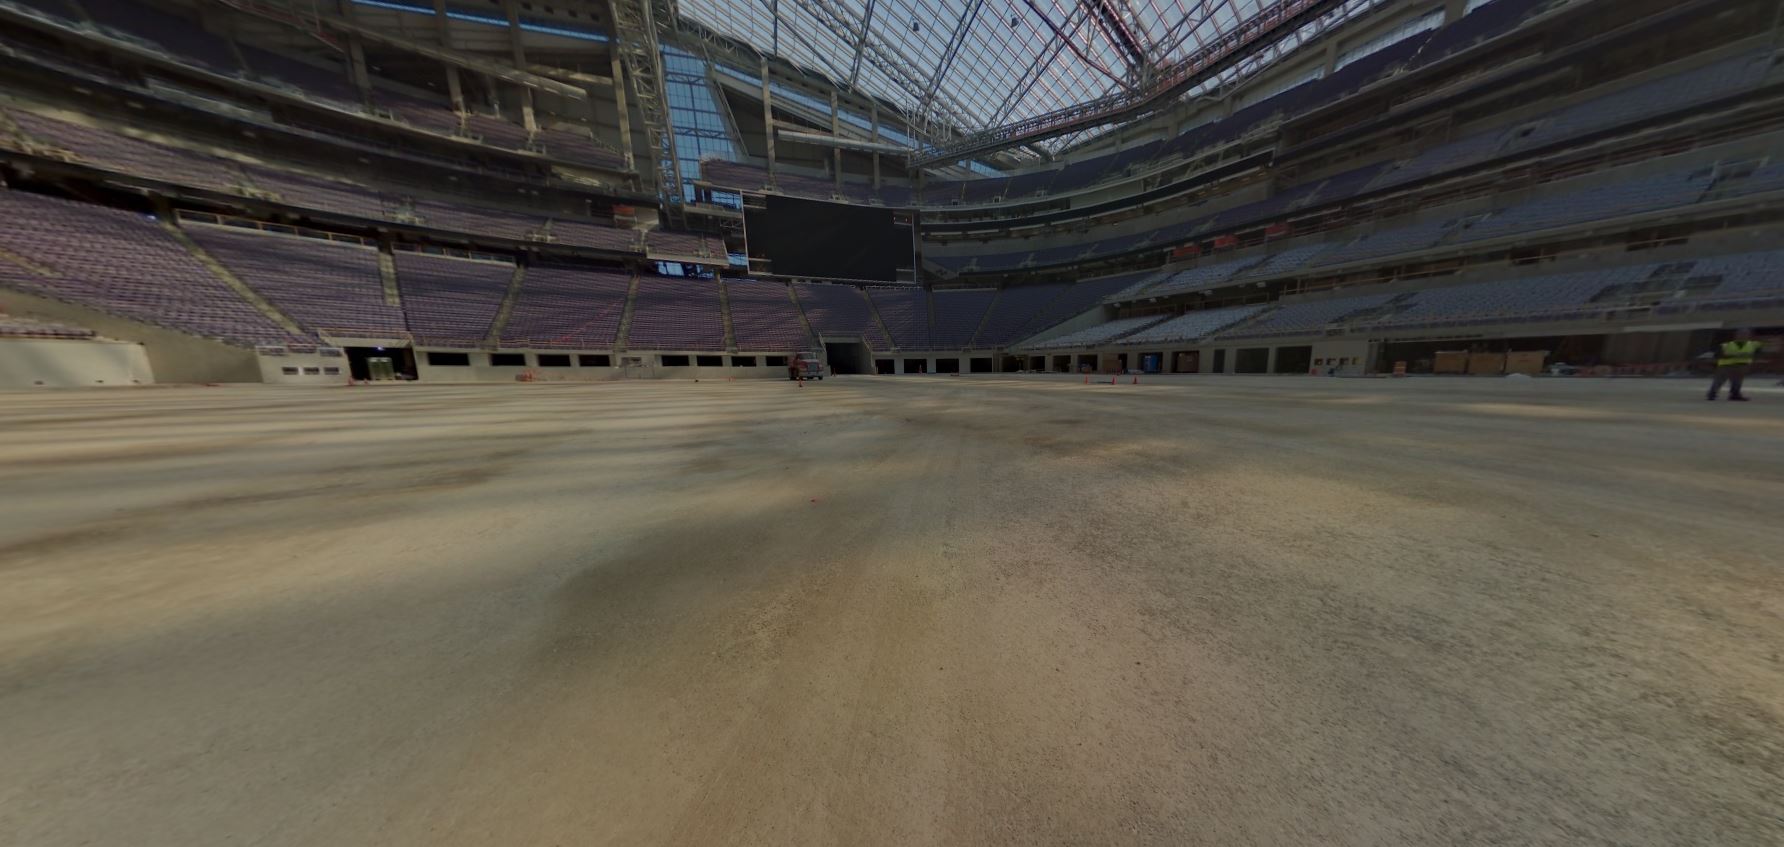 Fotos 360 U.S. Bank Stadium: Midfield